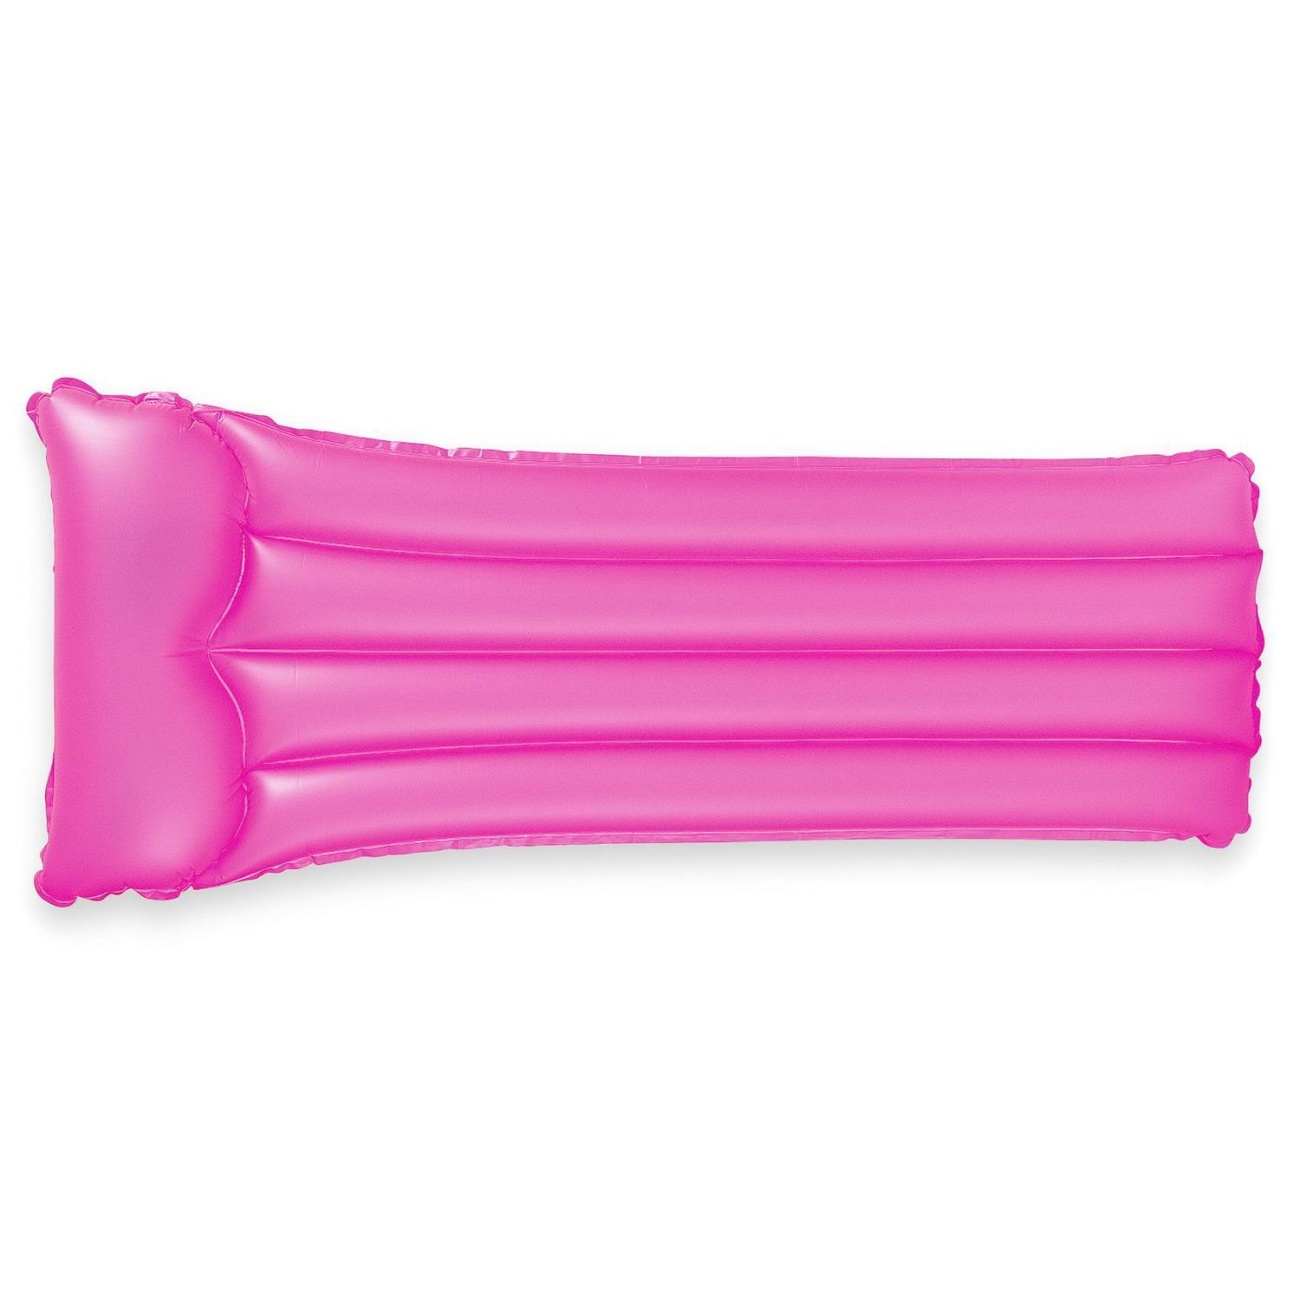 Матрас надувной INTEX Neon Frost Air Mats неоновый розовый, 183x76 см int59717NP/розовый